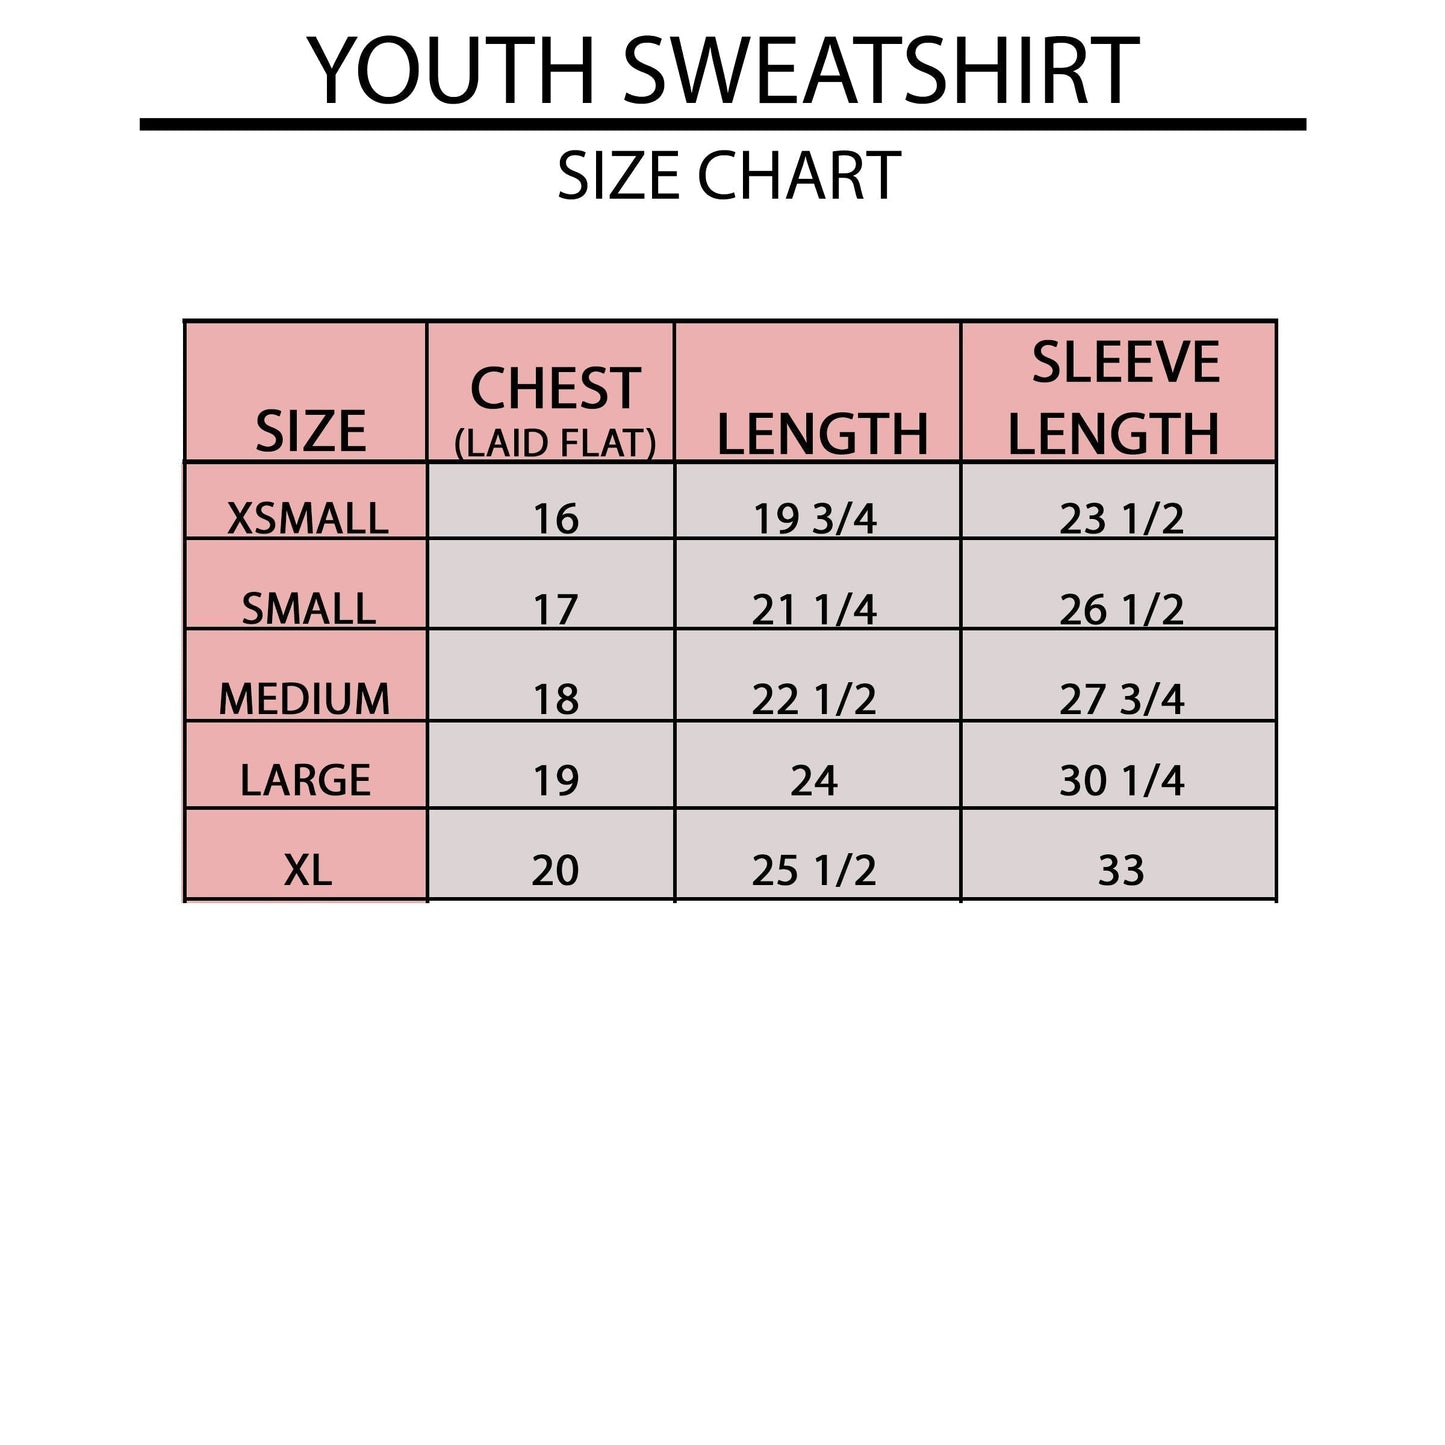 Get It Girl | Youth Sweatshirt